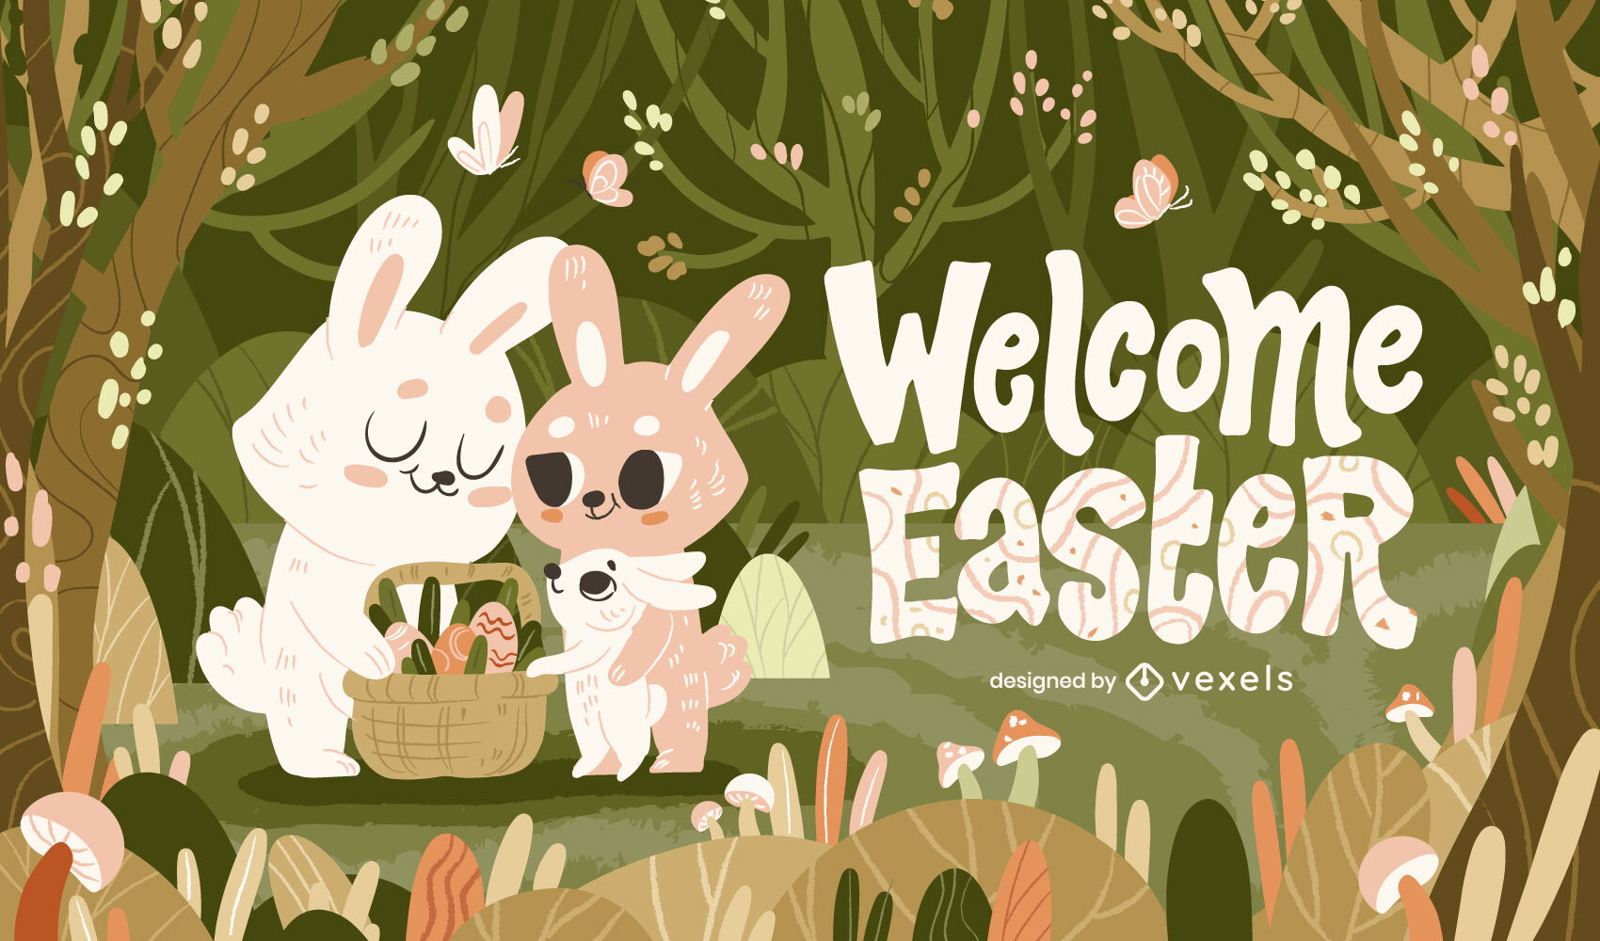 Ilustración de conejitos de bosque de Pascua de bienvenida